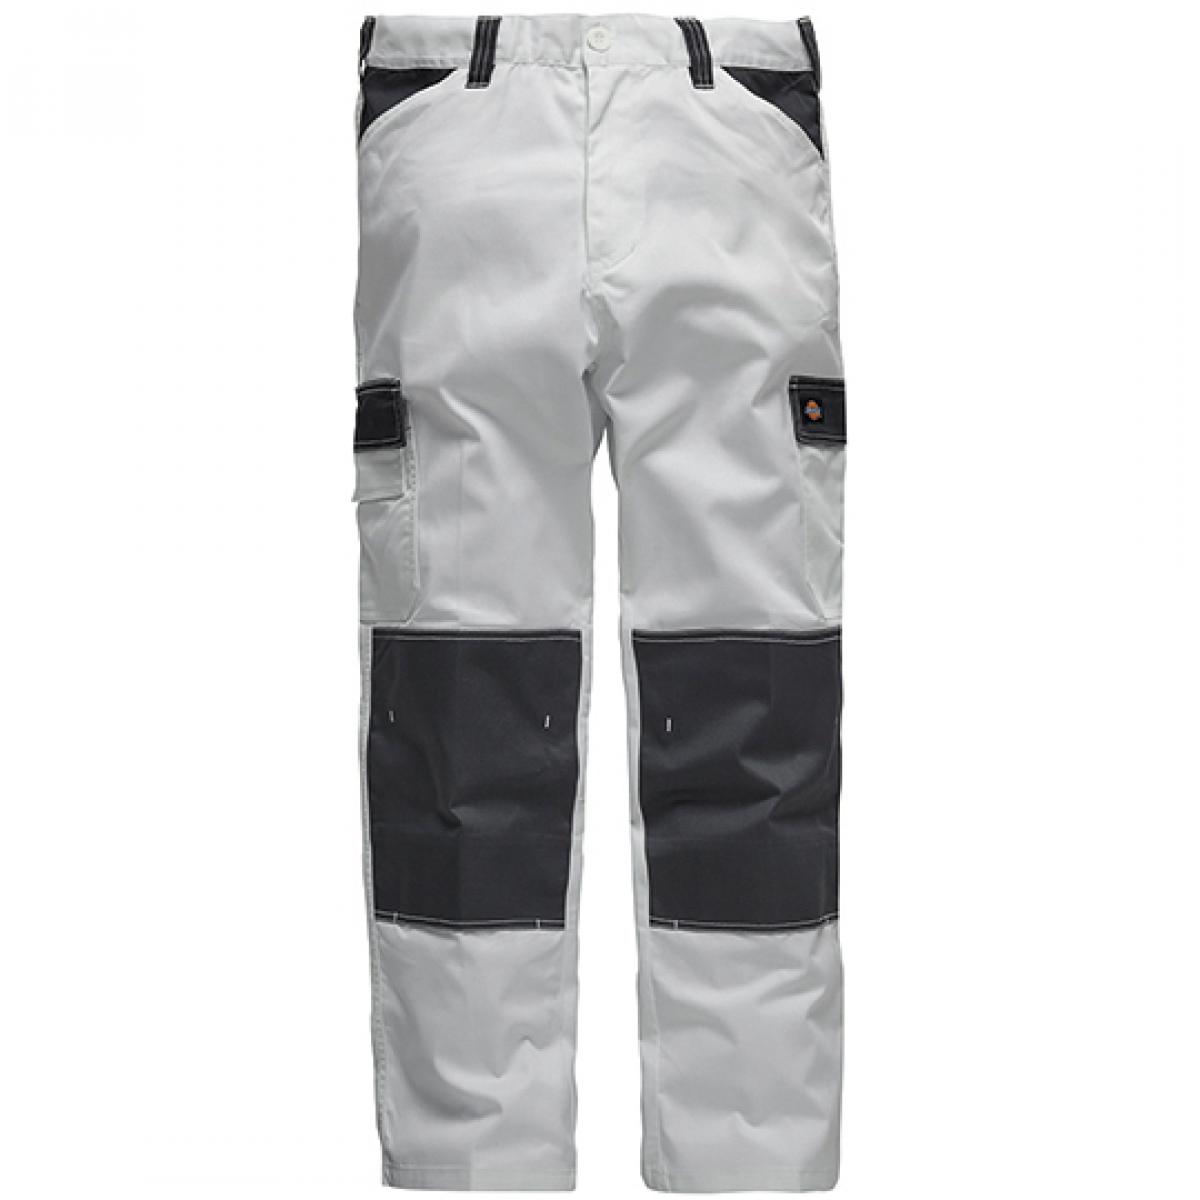 Hersteller: Dickies Herstellernummer: ED24/7 Artikelbezeichnung: Everyday Workwear Bundhose - ED24/7 Farbe: White/Grey (Solid)